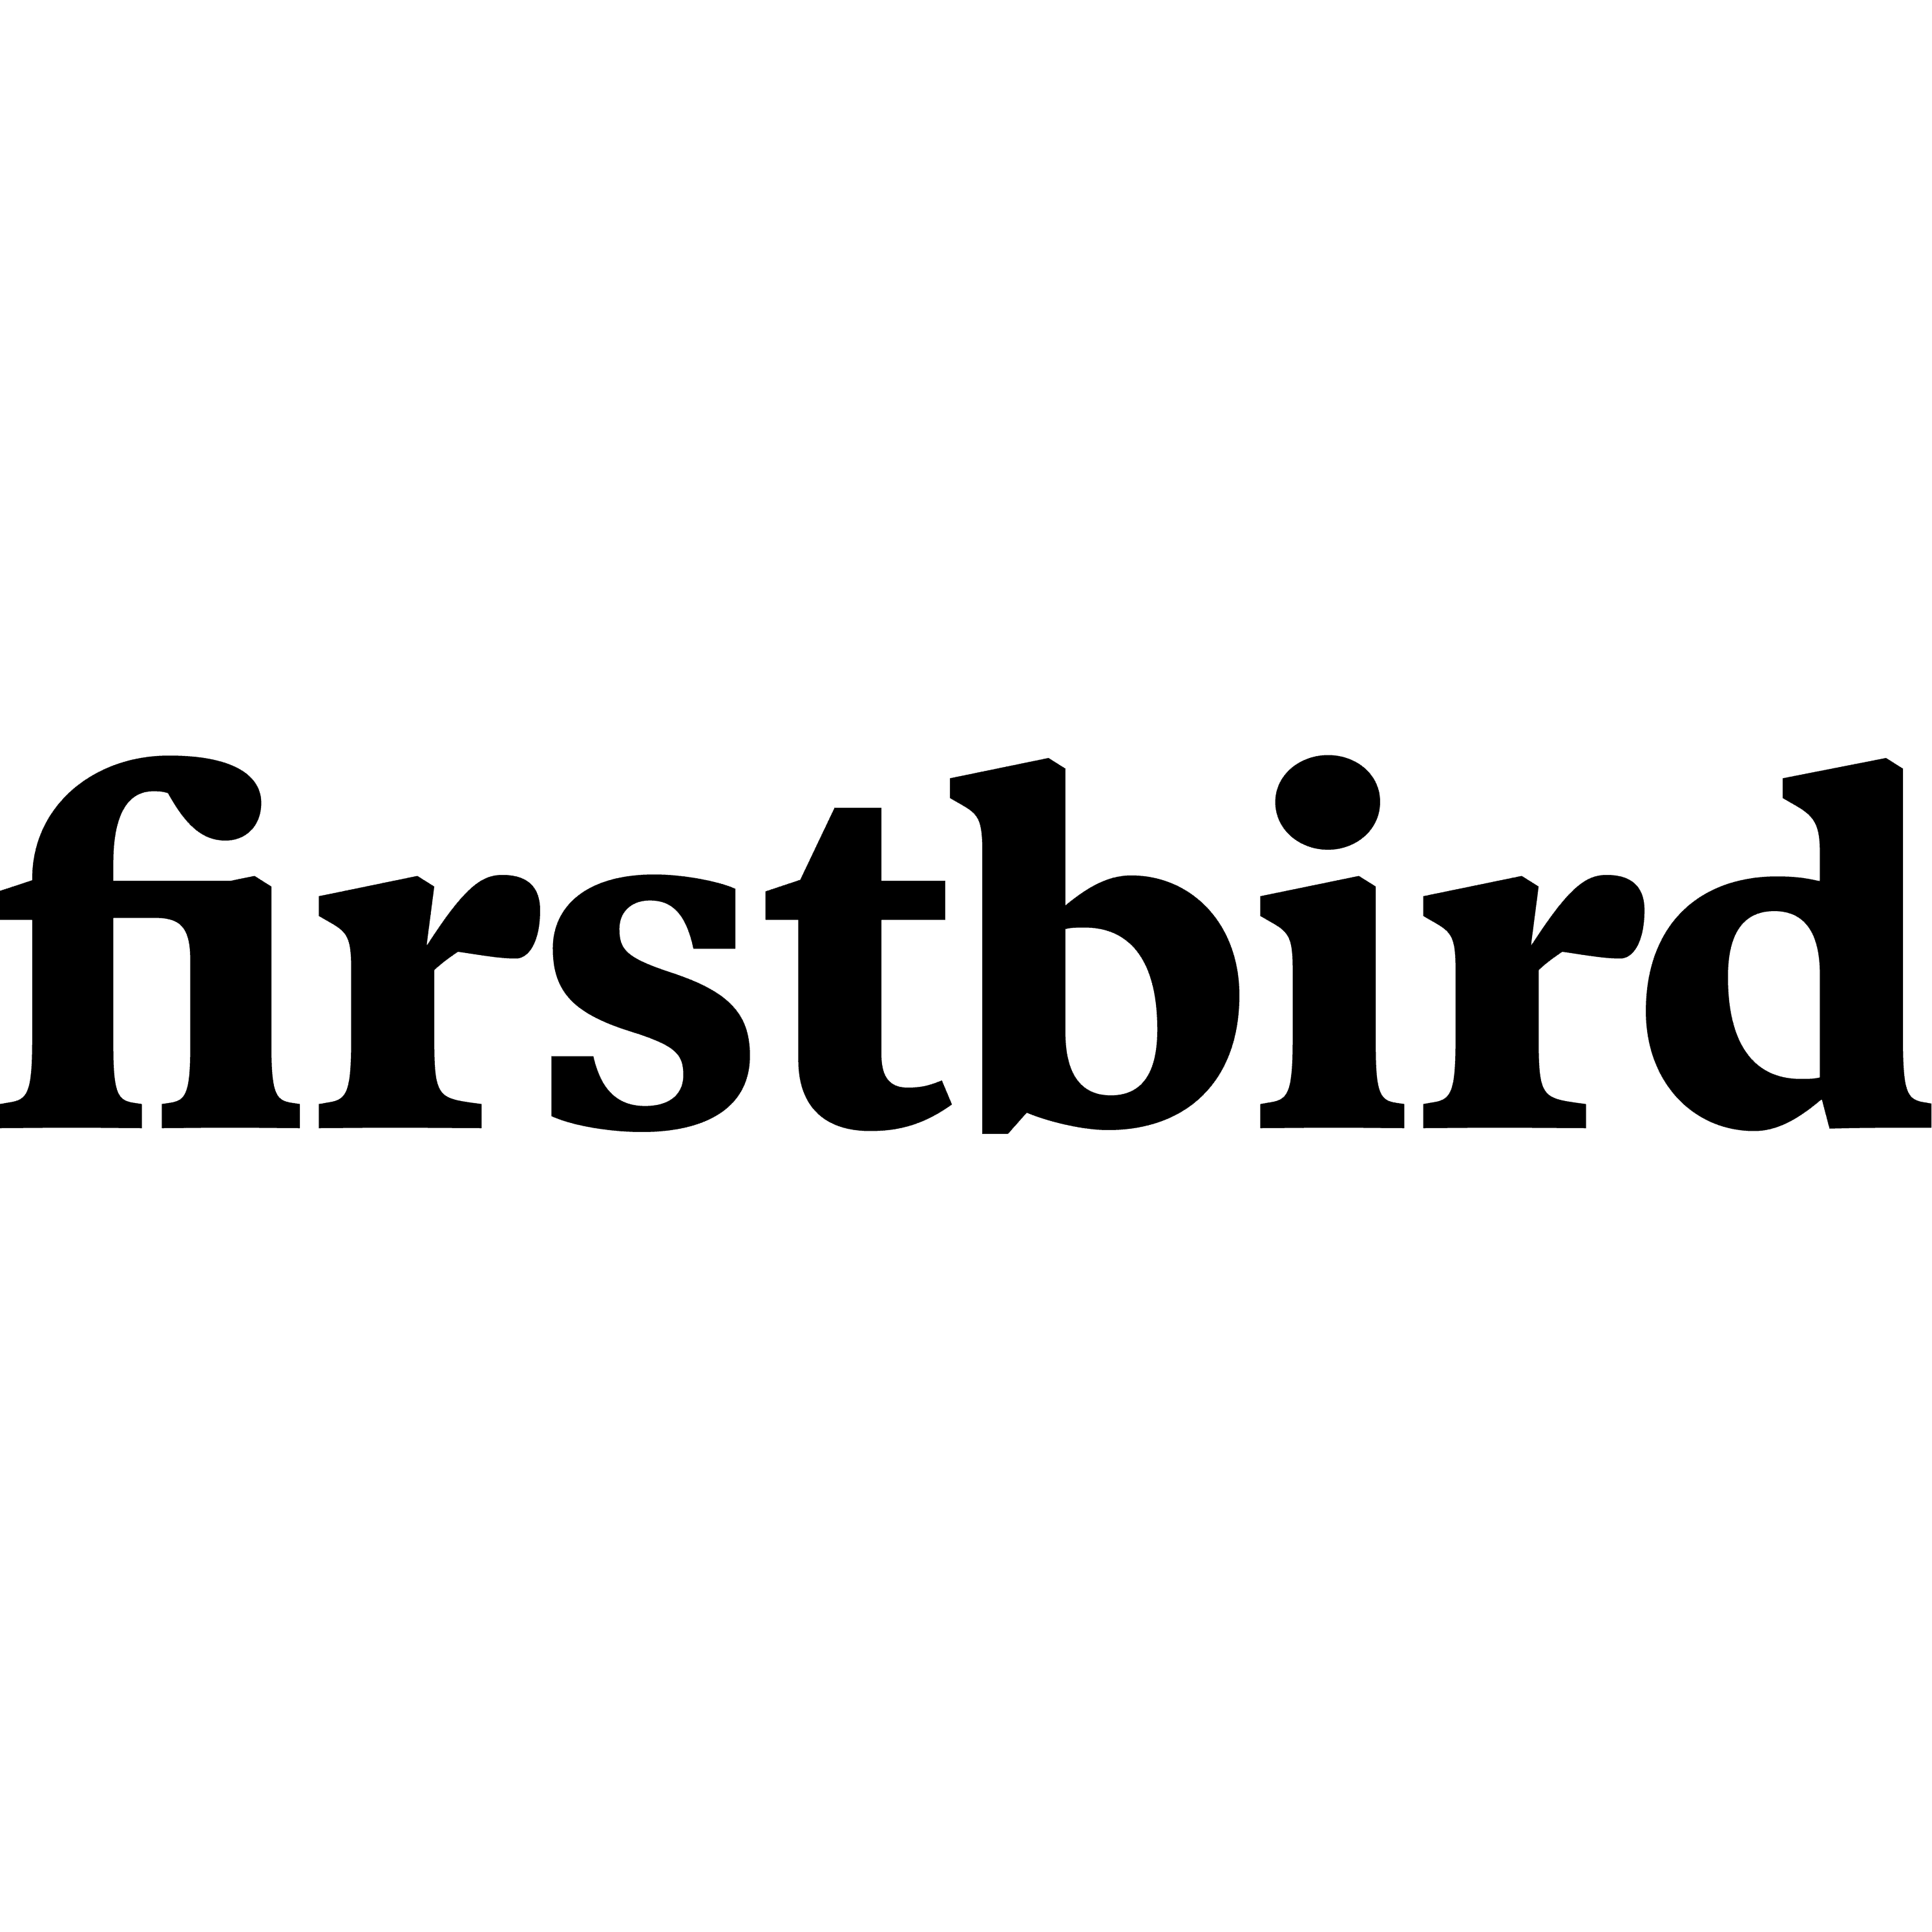 Firstbird-Logo auf blauem Hintergrund.